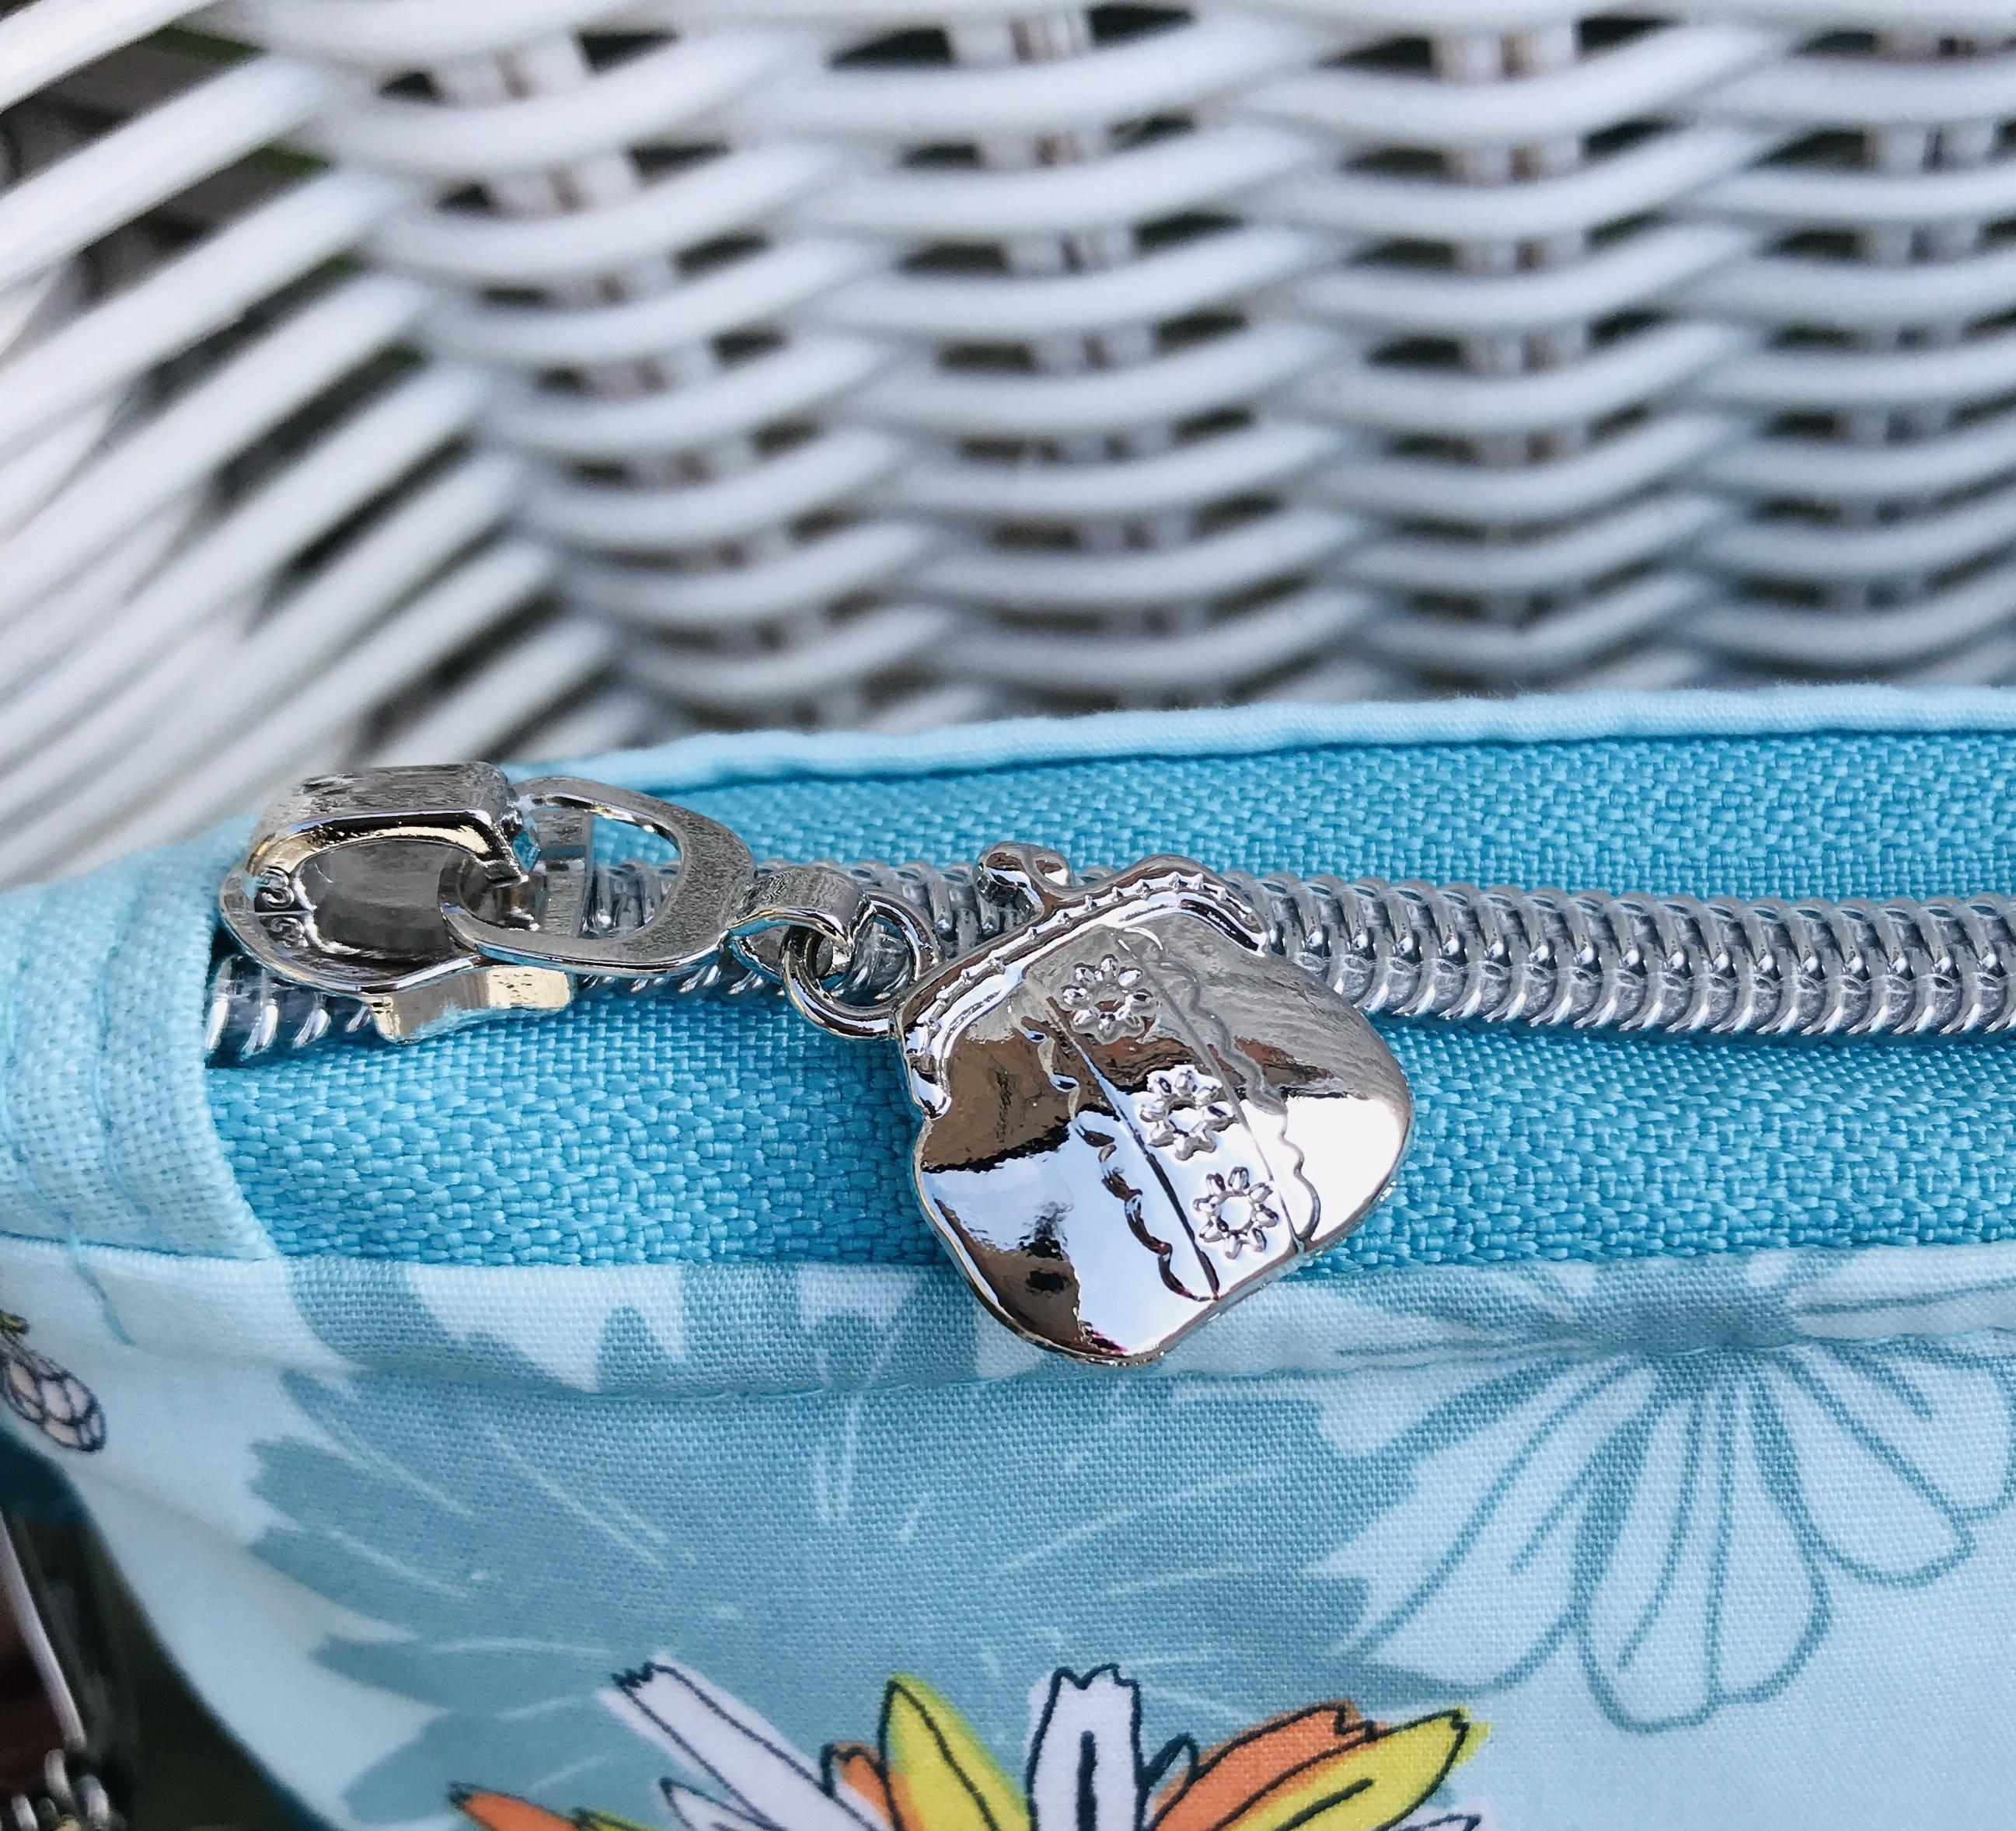 silver handbag shaped zipper pull on a handbag